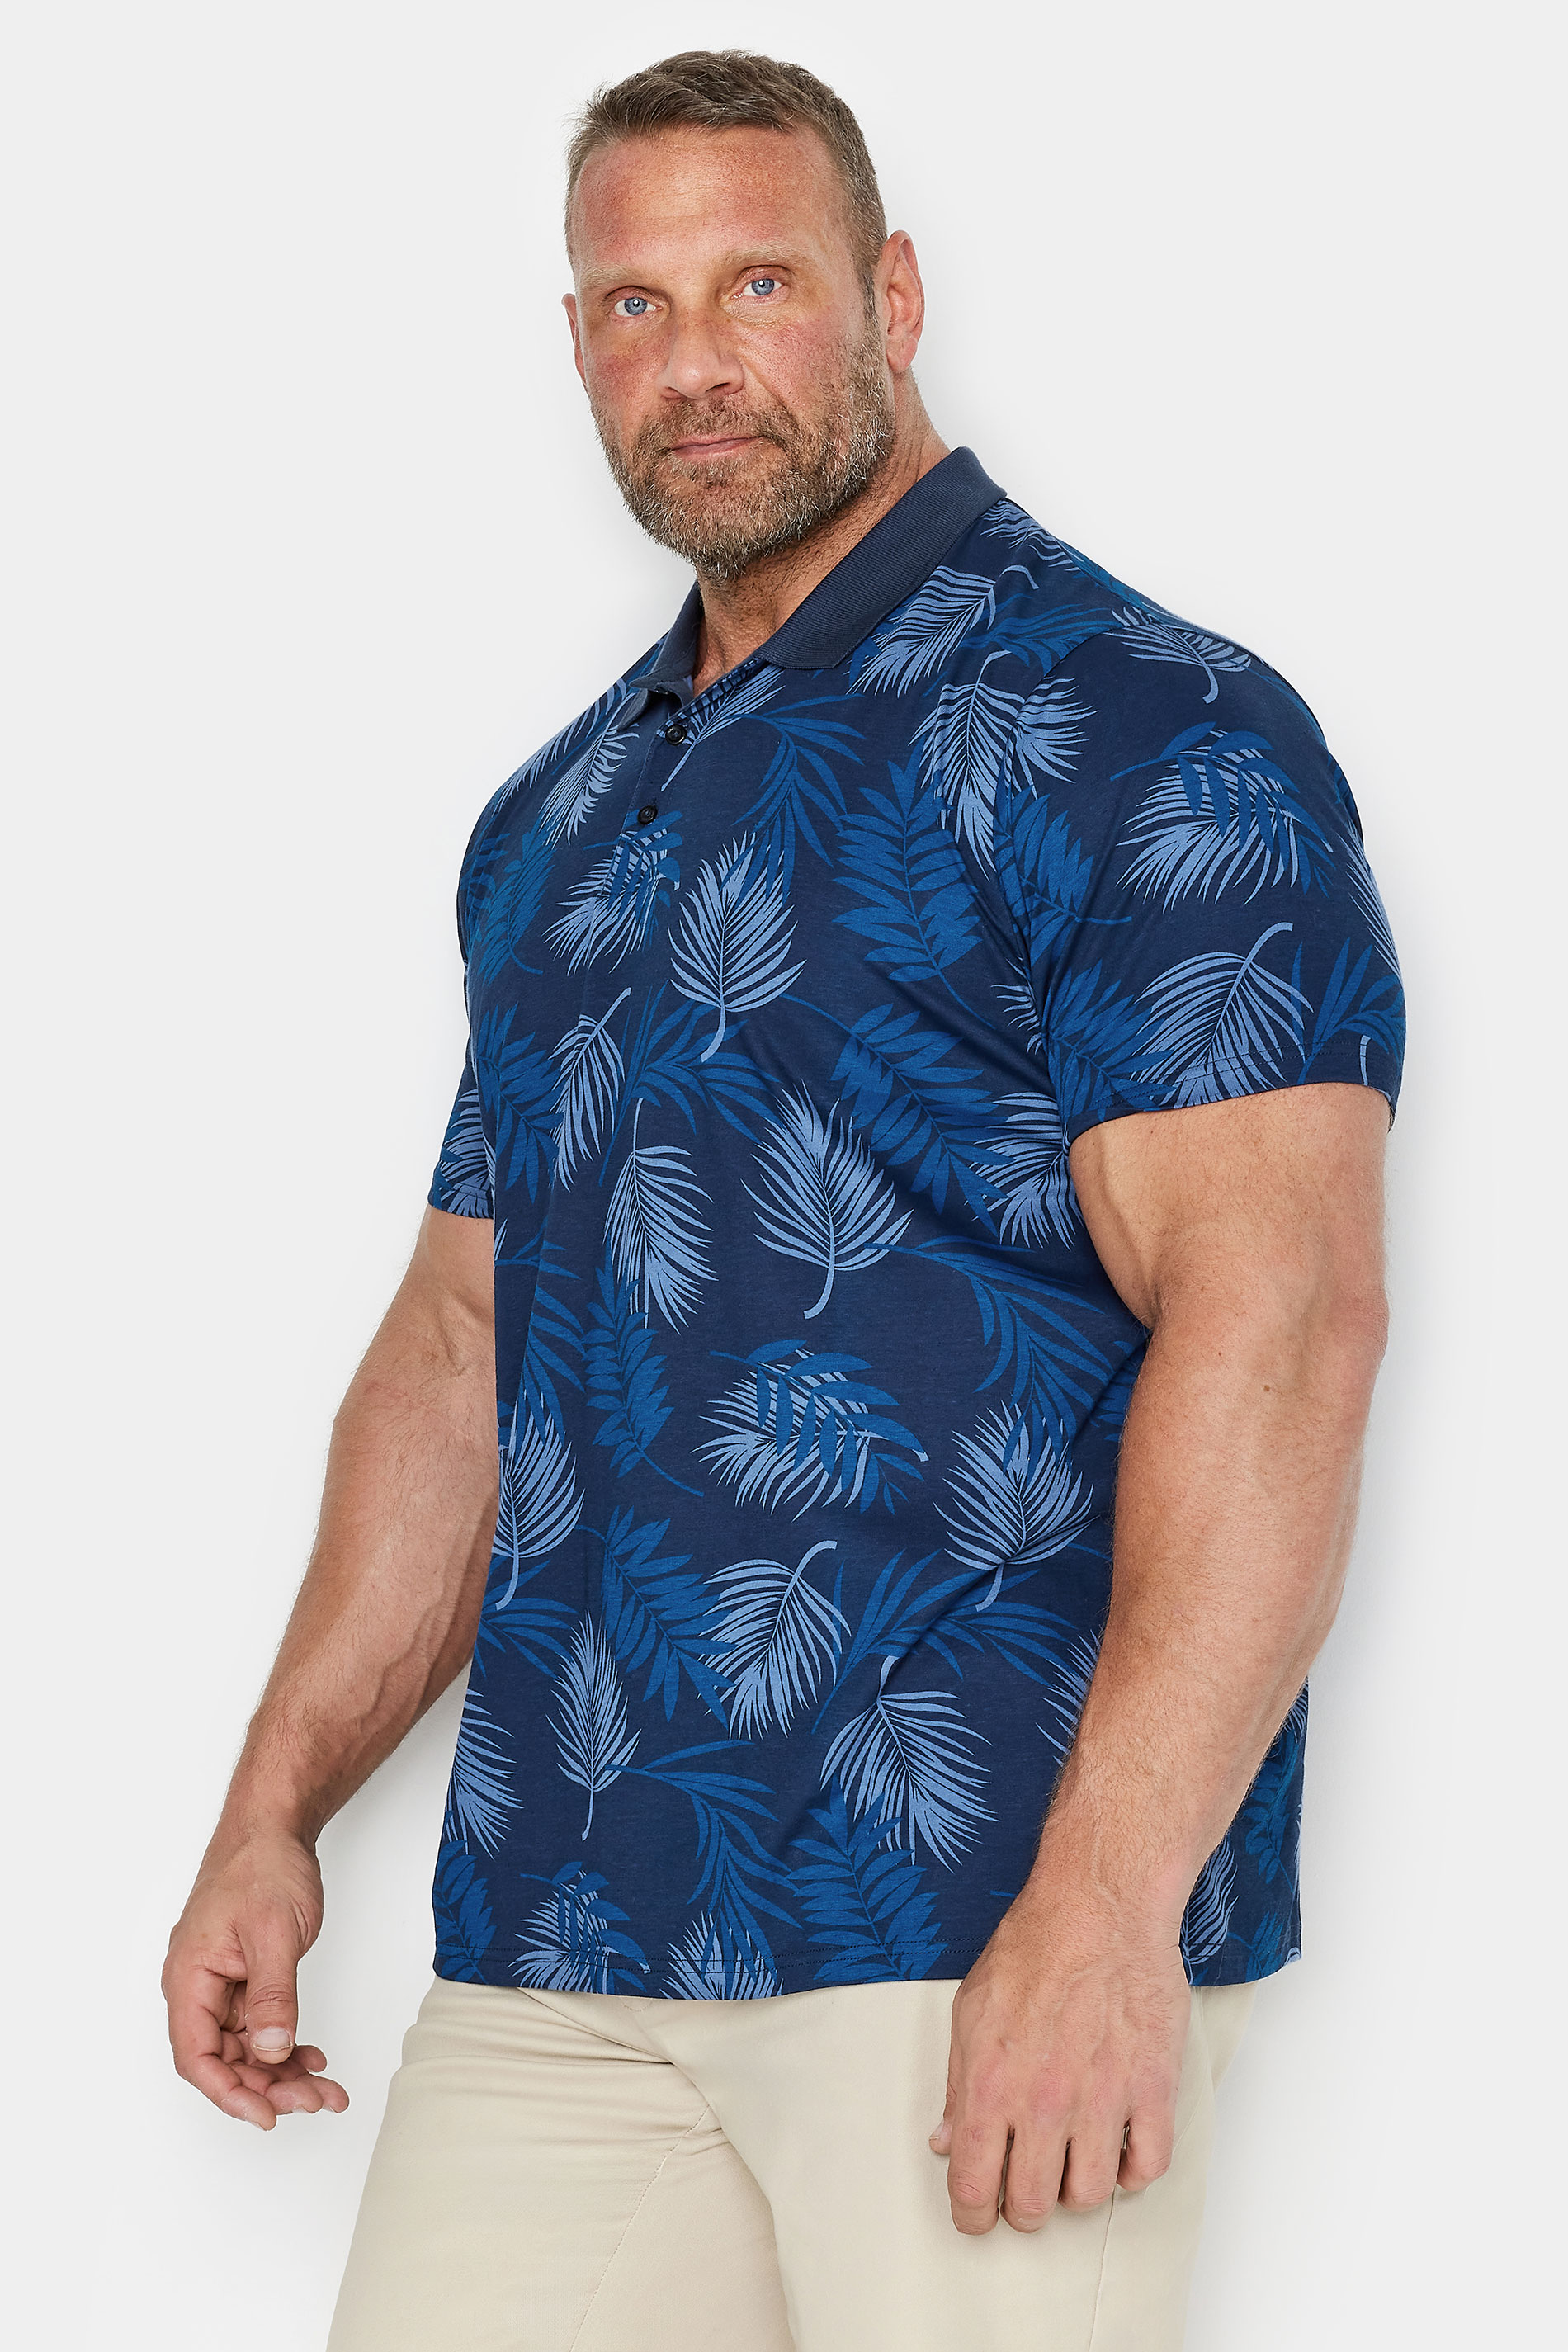 BadRhino Big & Tall Navy Blue Leaf Print Slub Polo Shirt | BadRhino 2